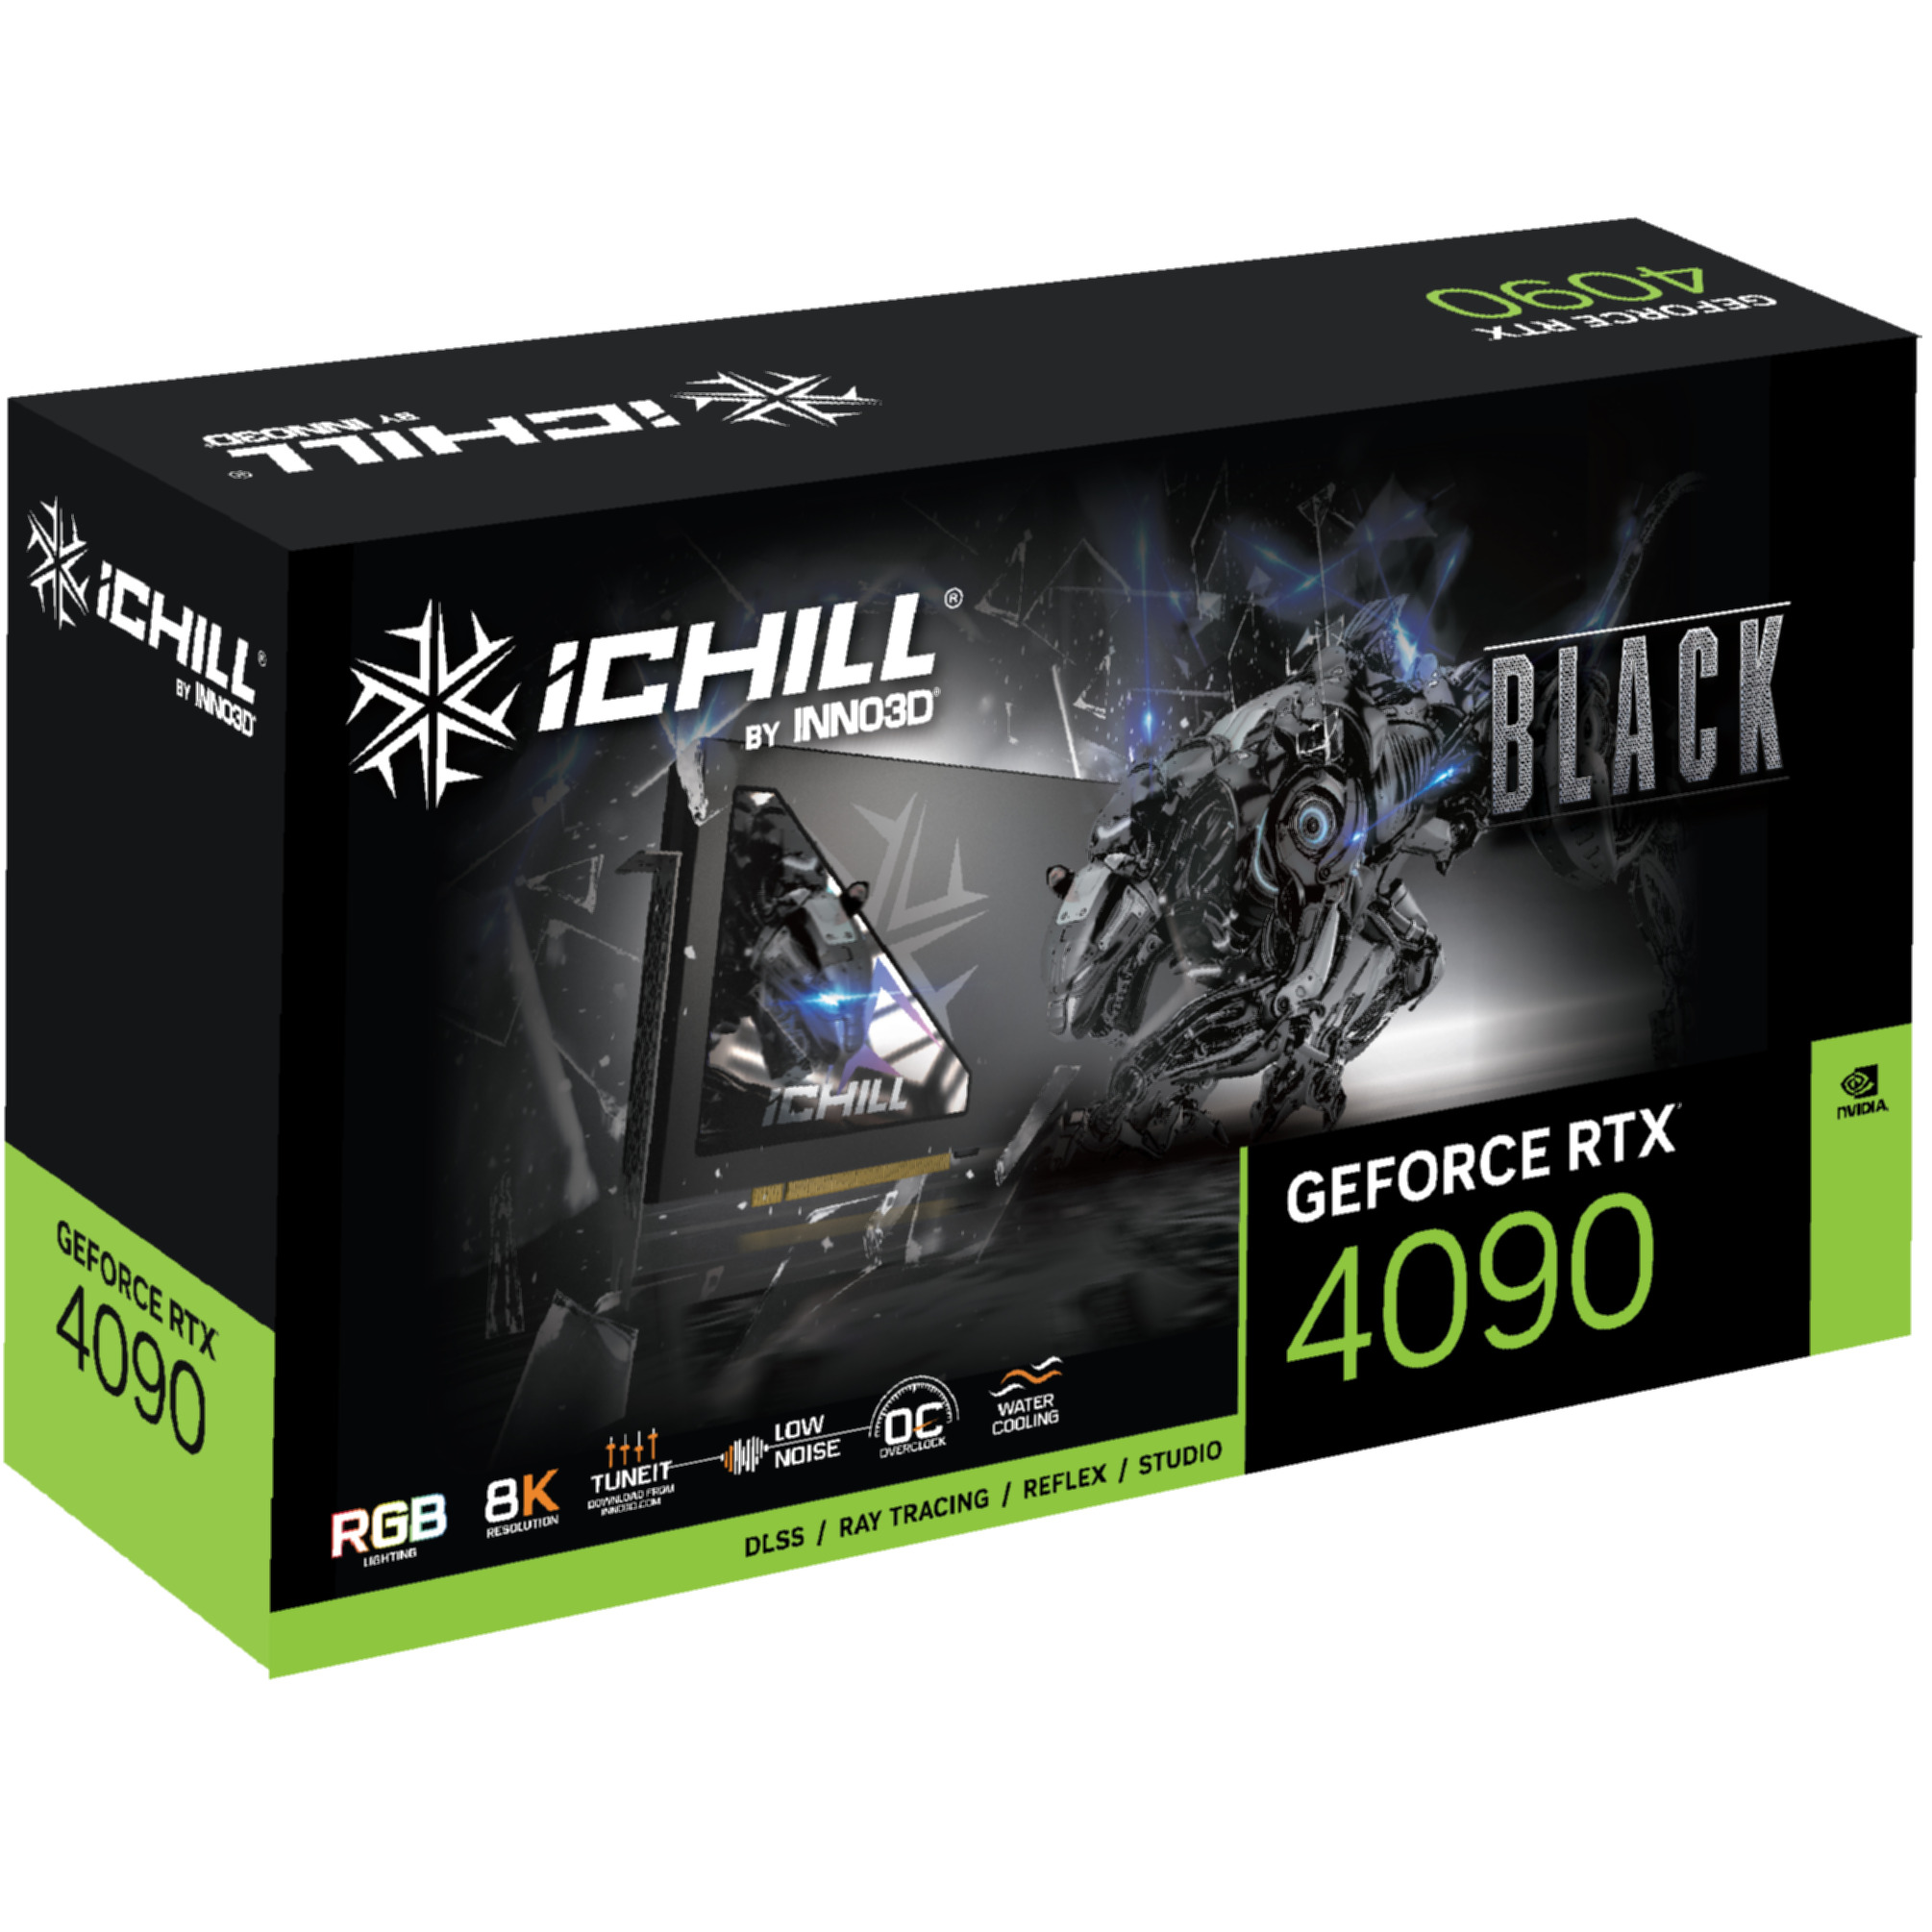 BLACK 4090 RTX (NVIDIA, ICHILL GeForce Grafikkarte) INNO3D